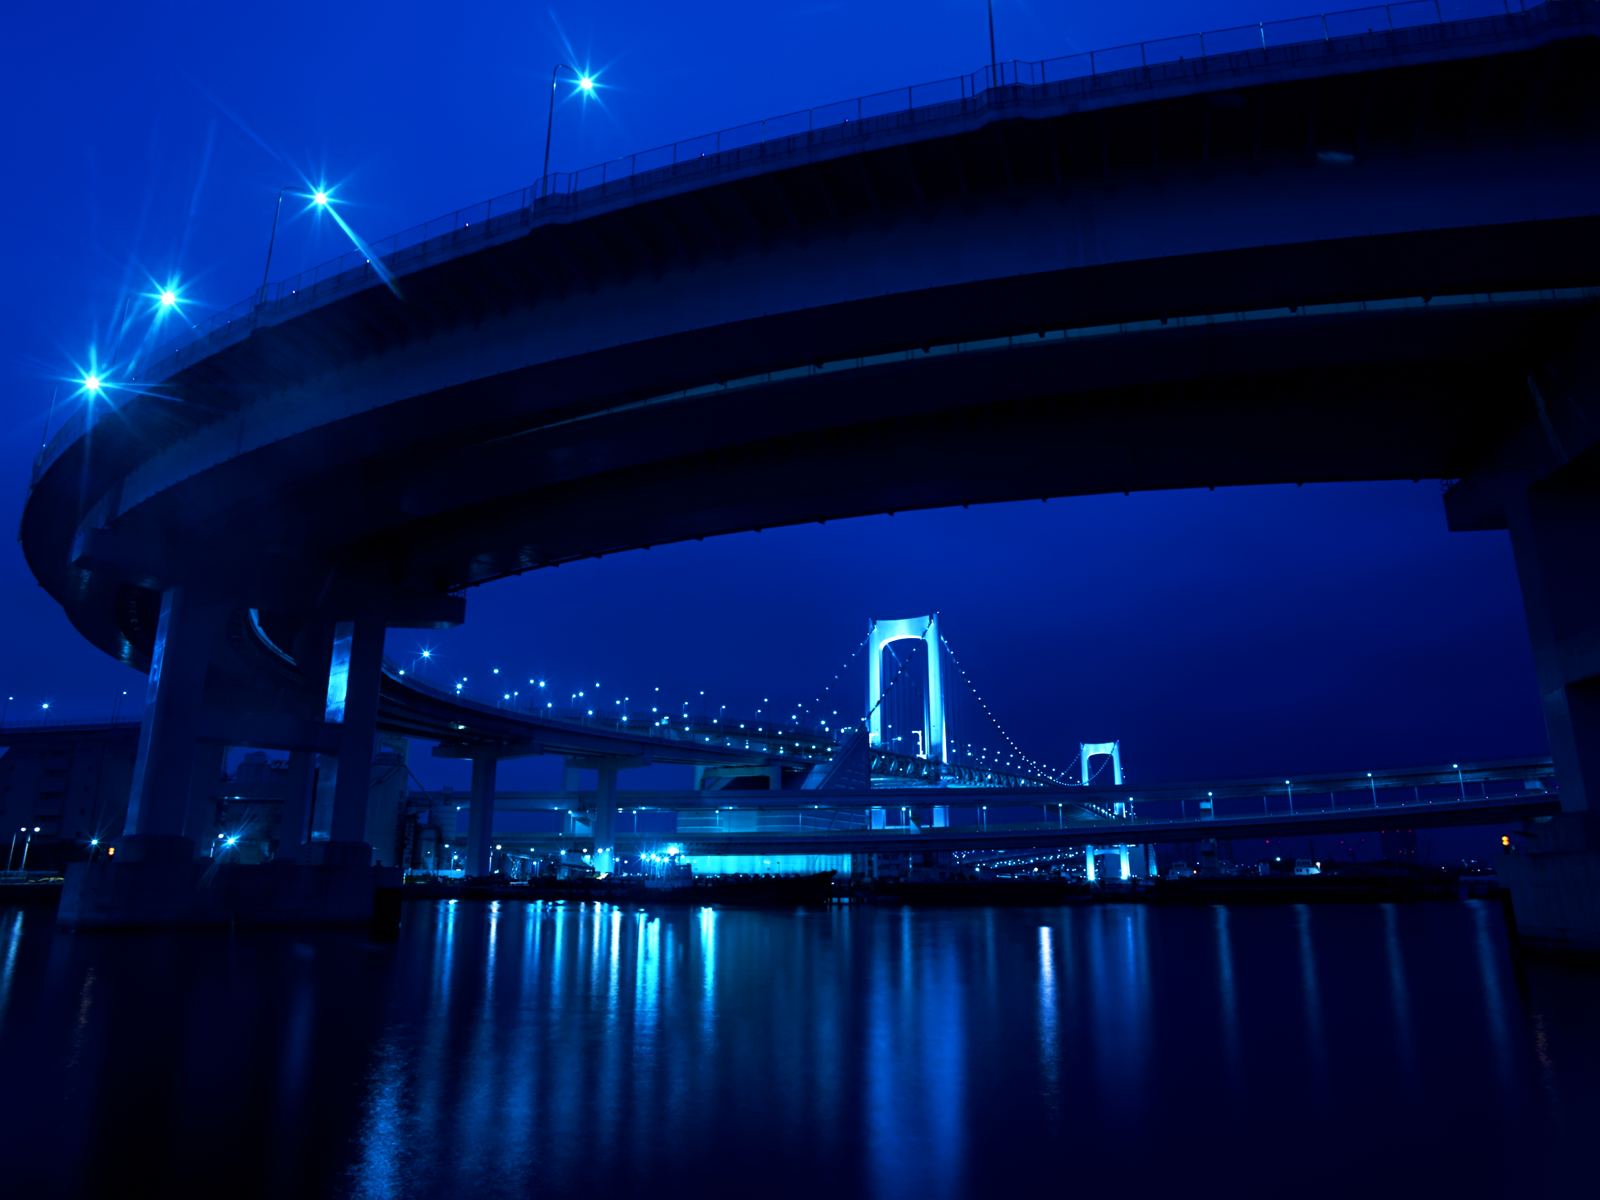 http://1.bp.blogspot.com/_UeKpPmoedmk/SxE-1X3oYOI/AAAAAAAAAH0/S9V69wBCZsM/s1600/City+Bridge+Blue+Skyline+walp+TLG.png